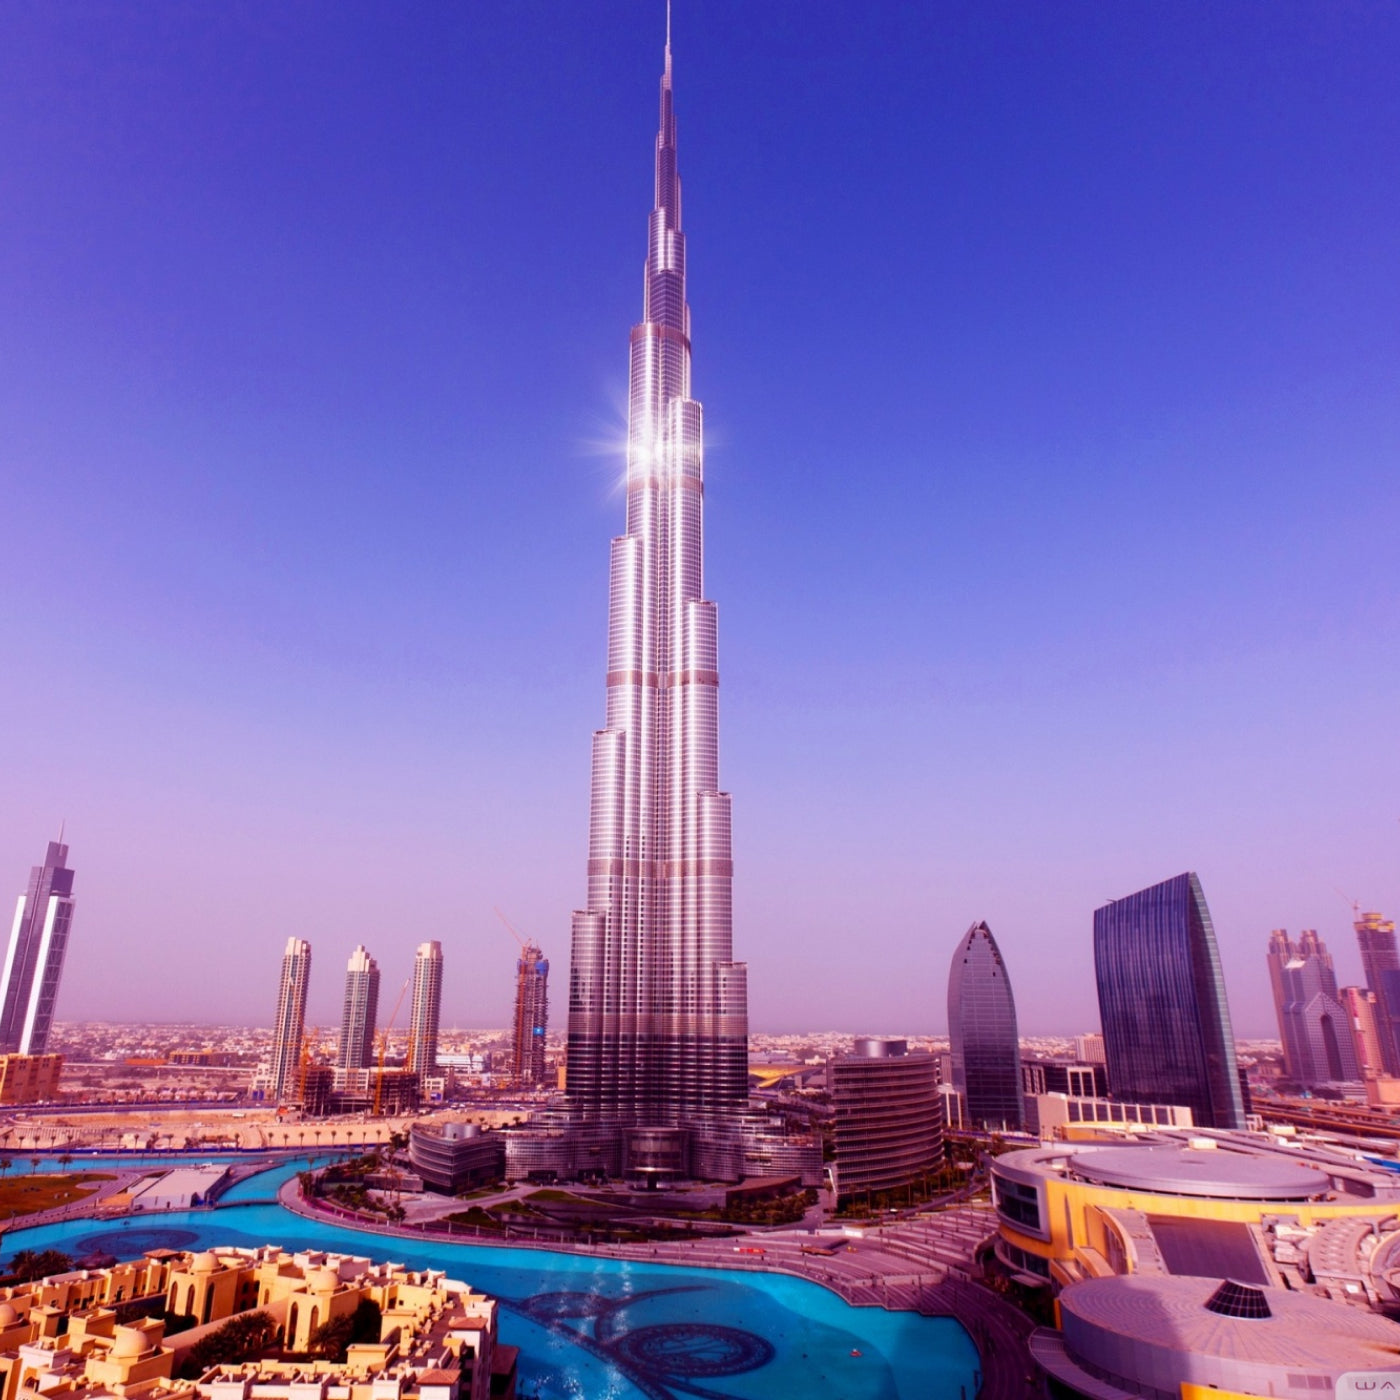 Burj Khalifa ‐ 148 Floors